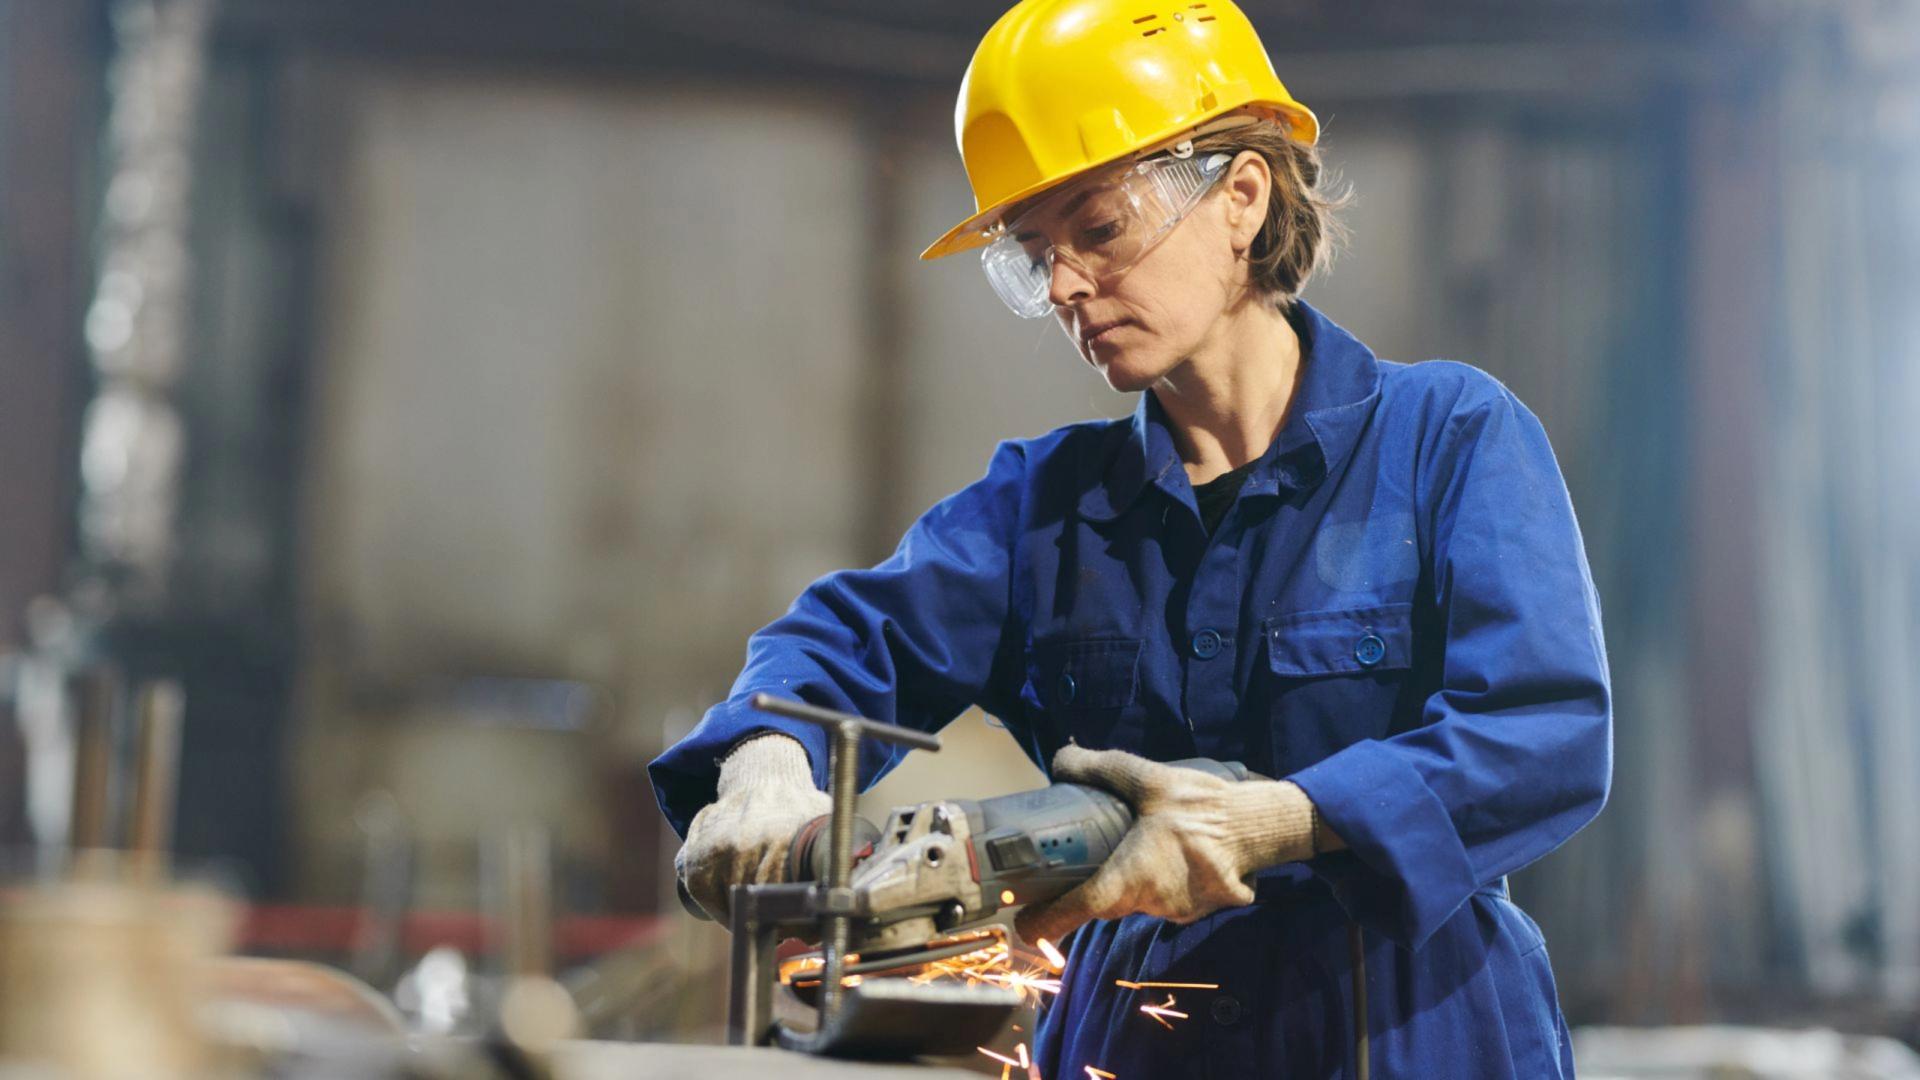 Eine Frau arbeitet mit einem Winkelschleifer an einem Metallwerkstück